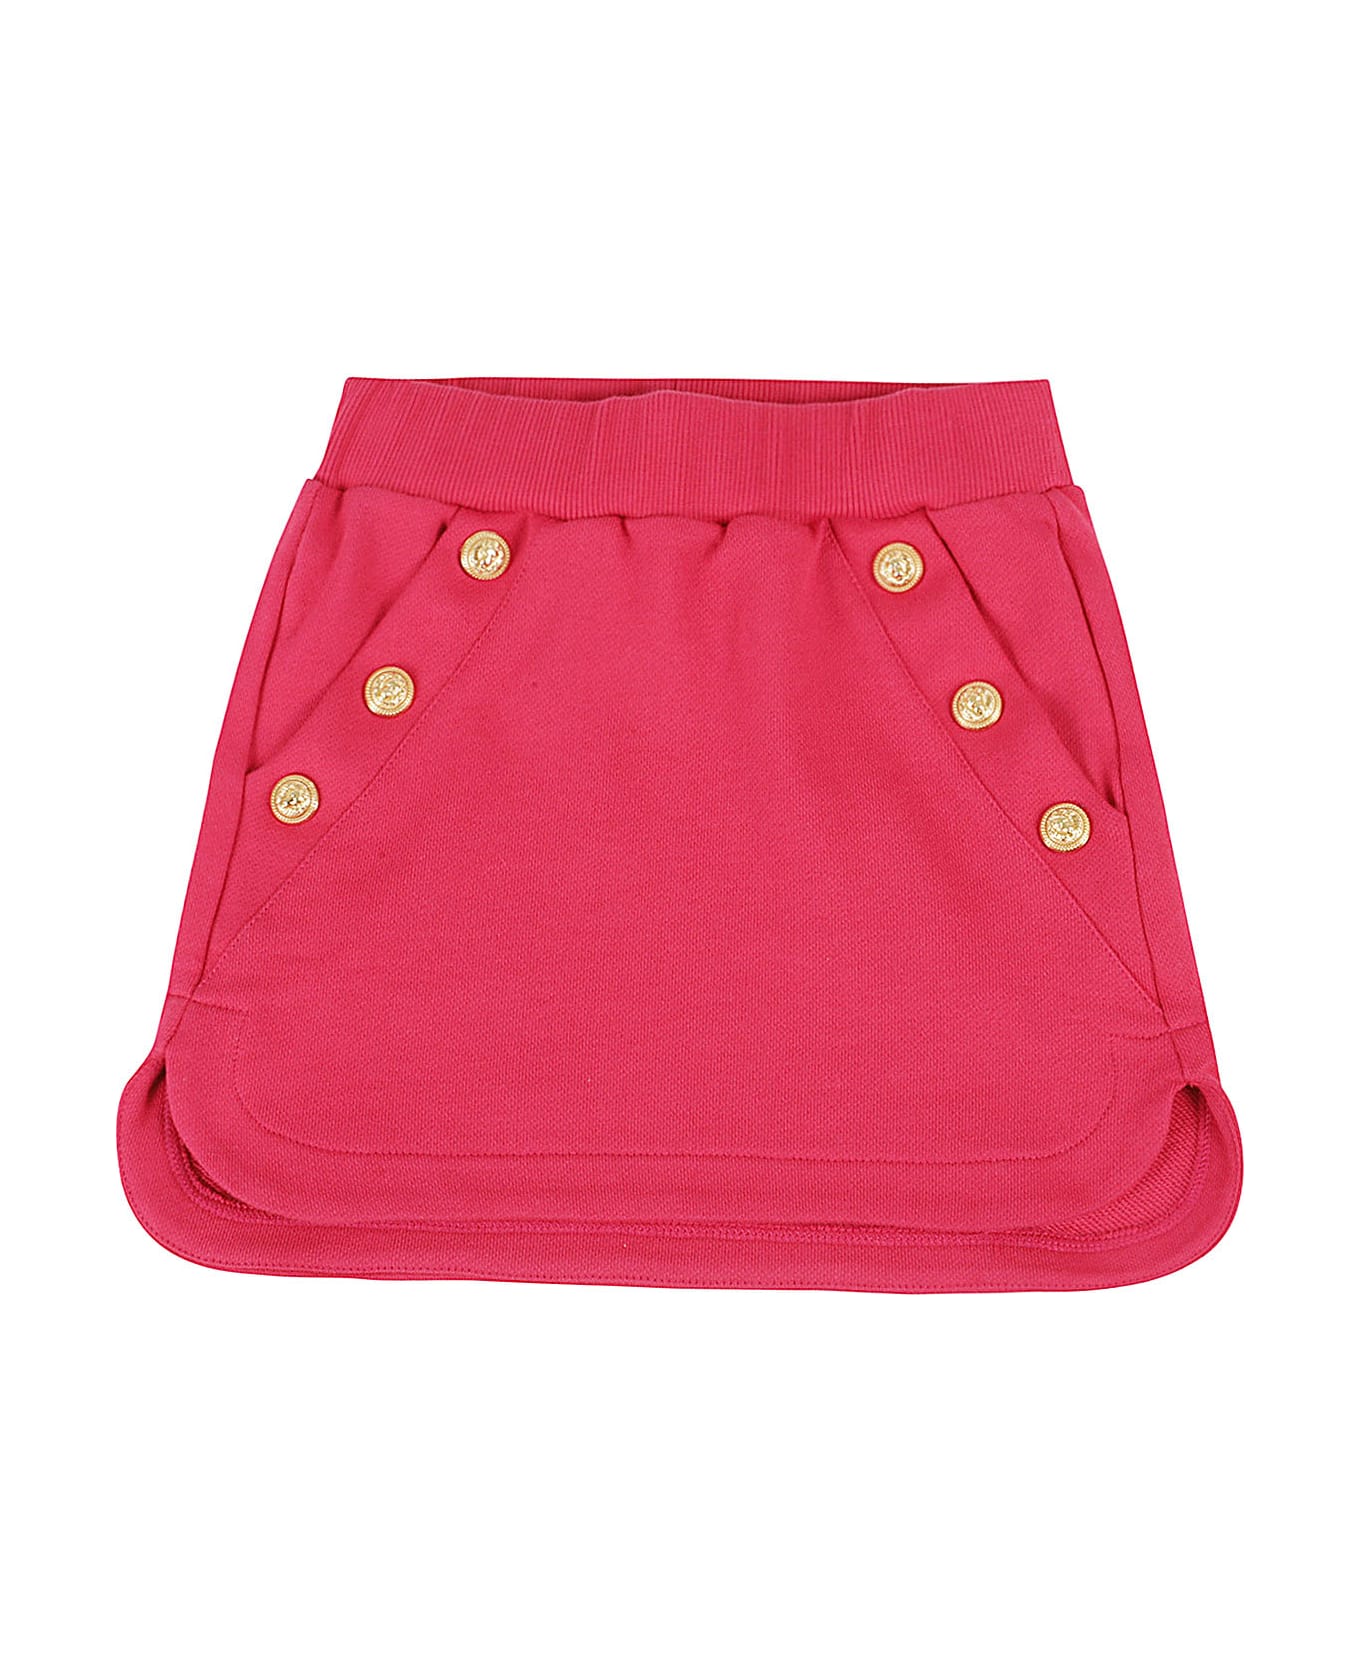 Balmain Skirt - Nor Rubino Oro